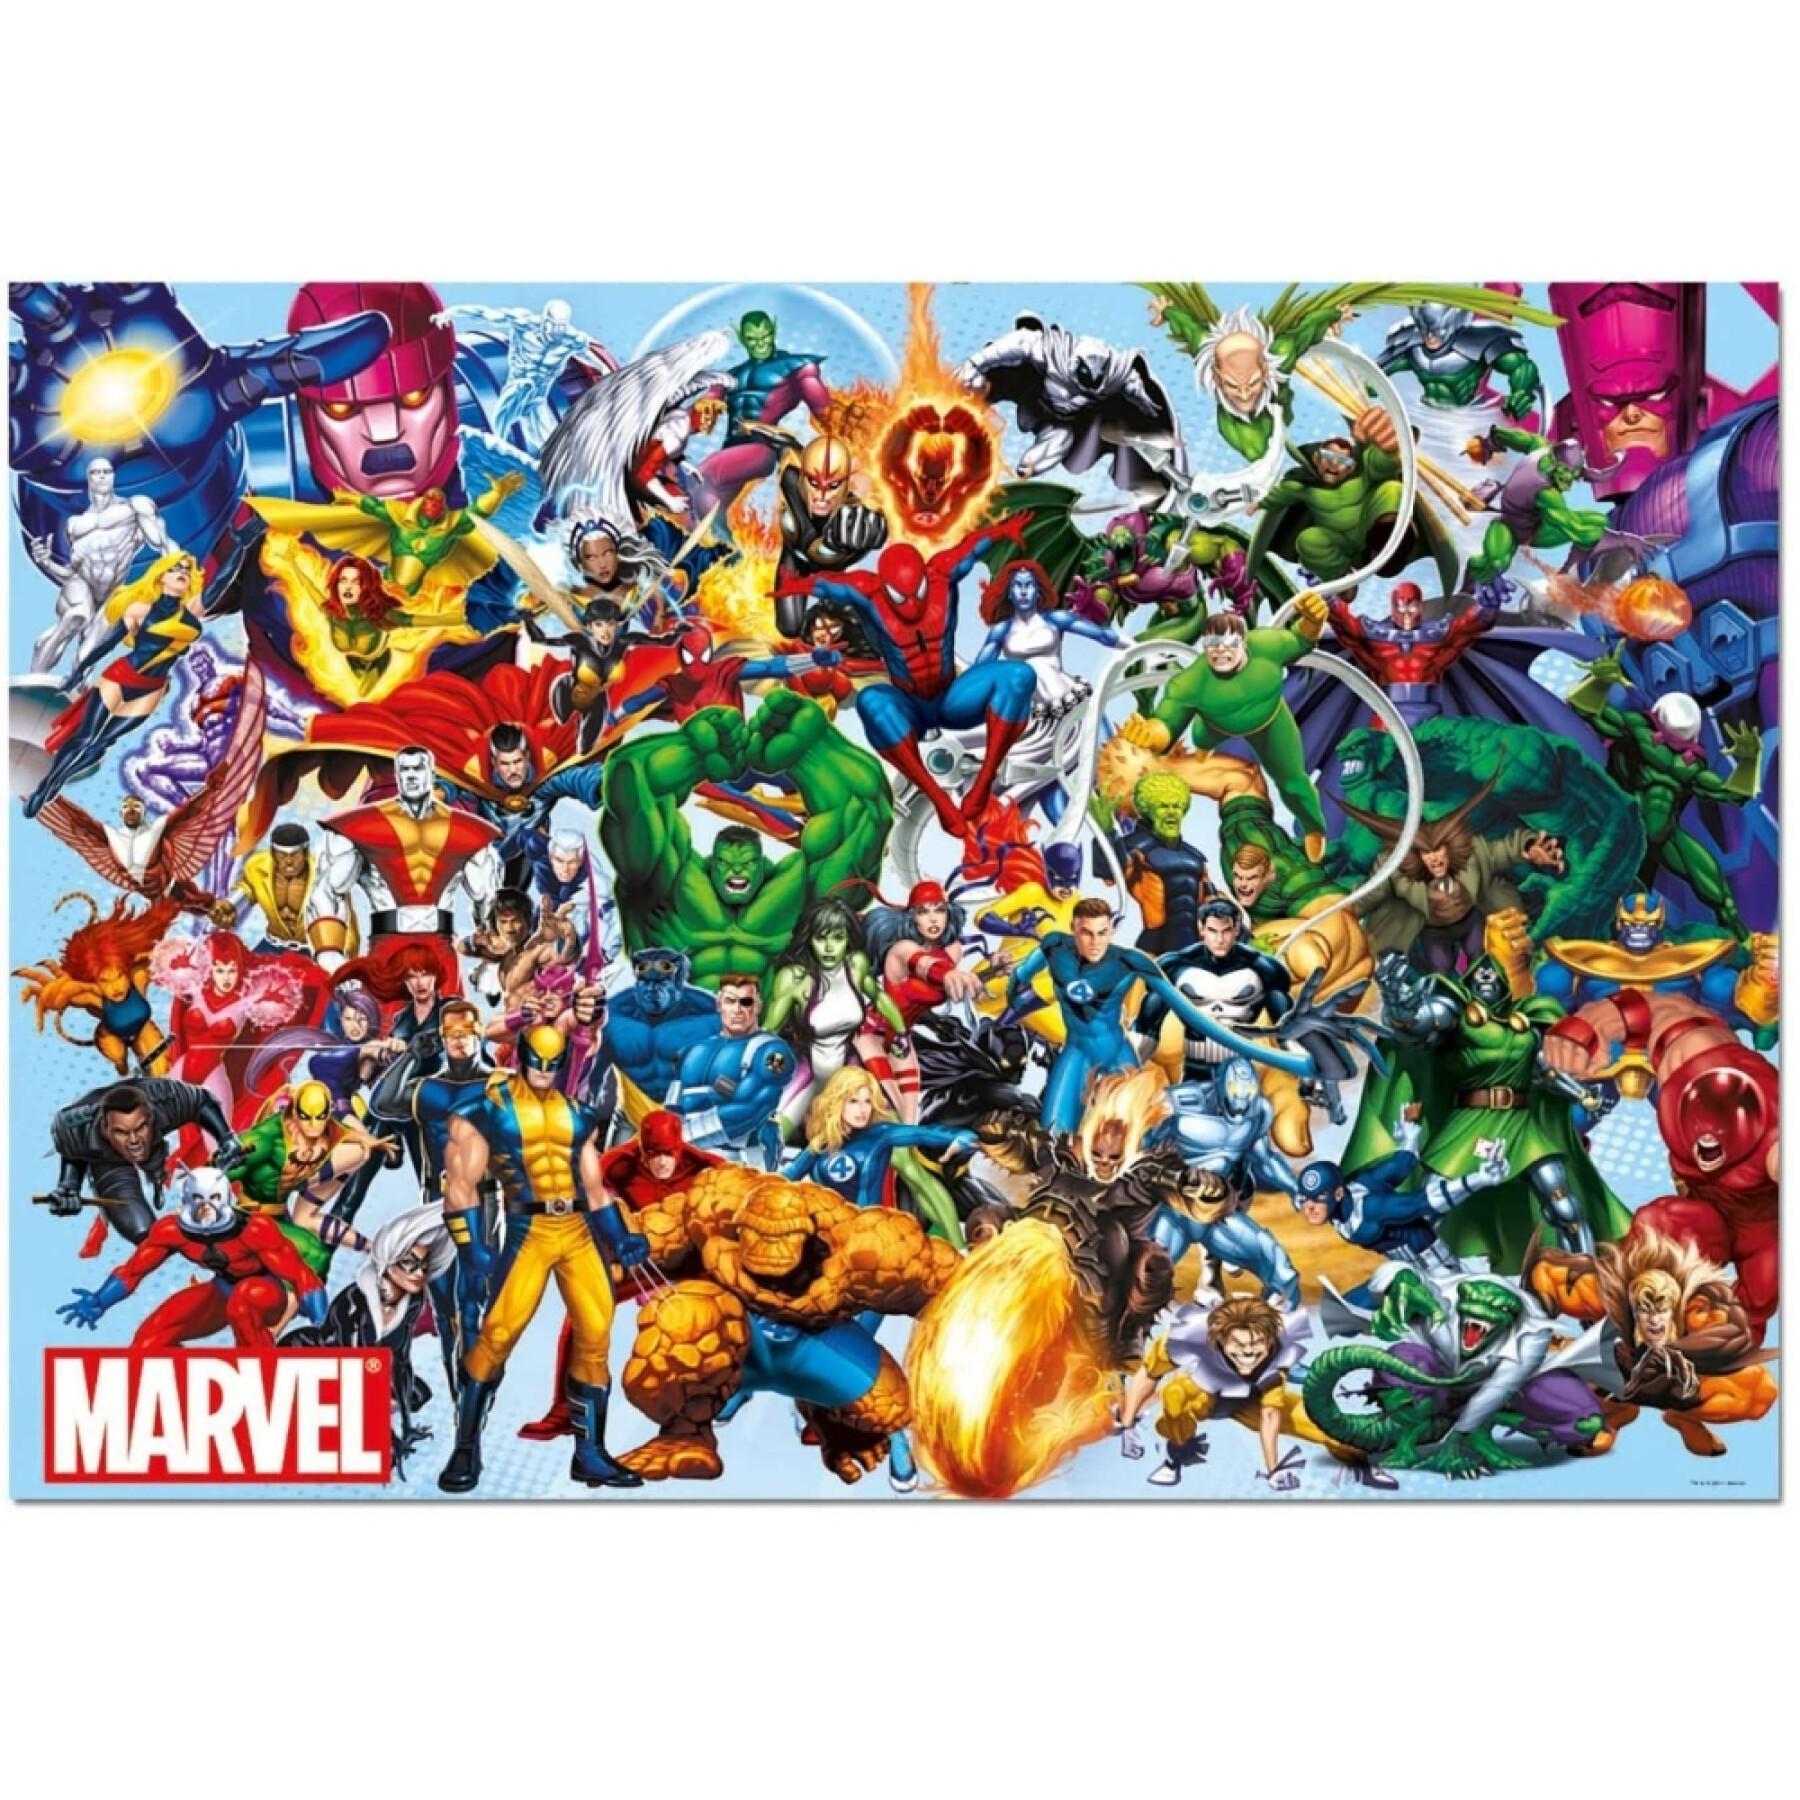 Puzzle de 1000 peças Avengers Marvel Heroes